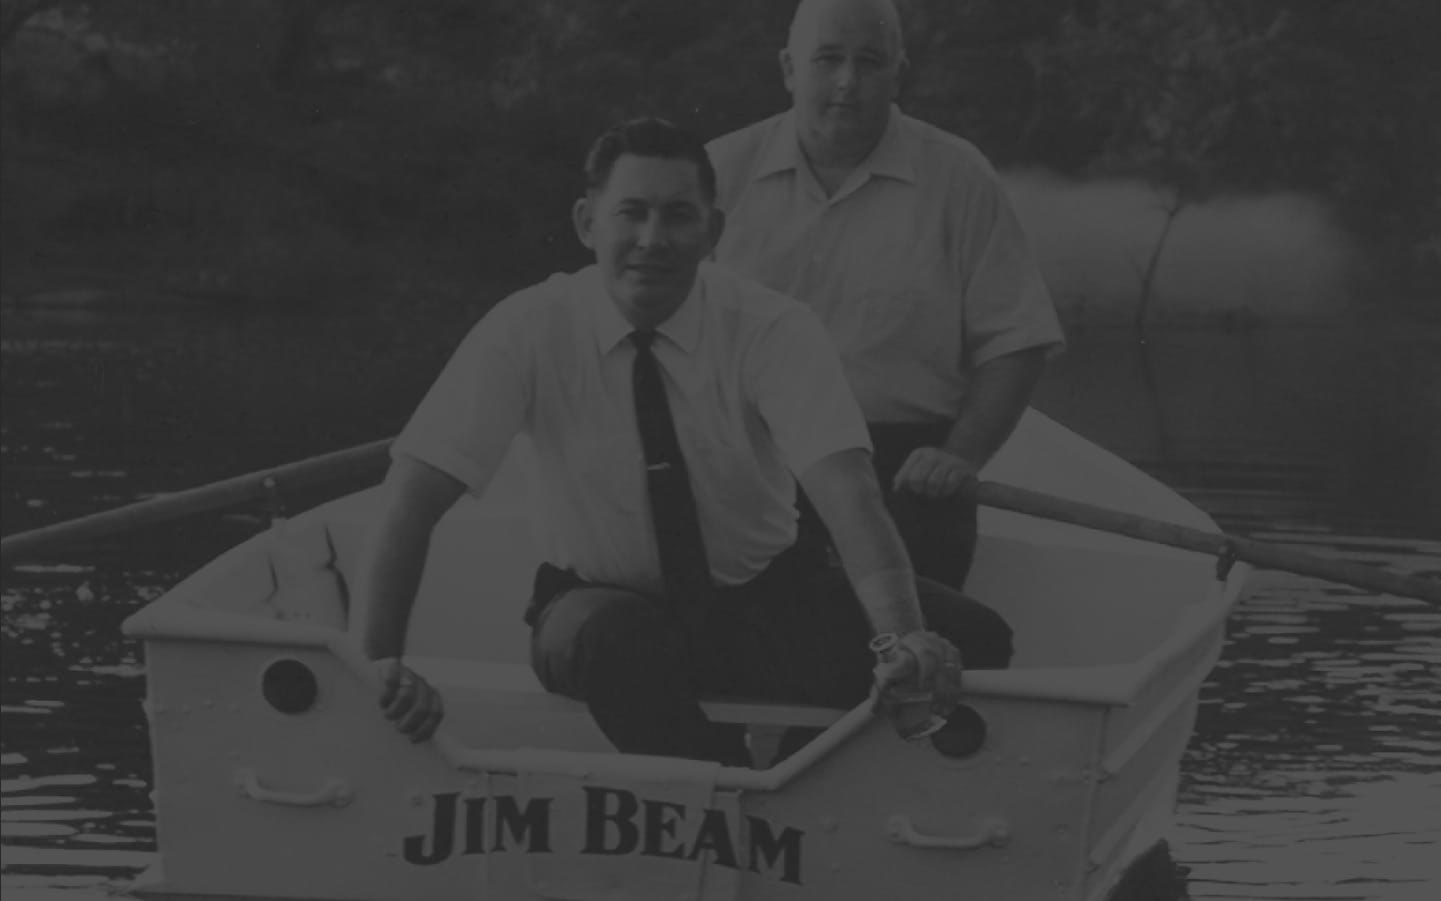 Jim Beam boat